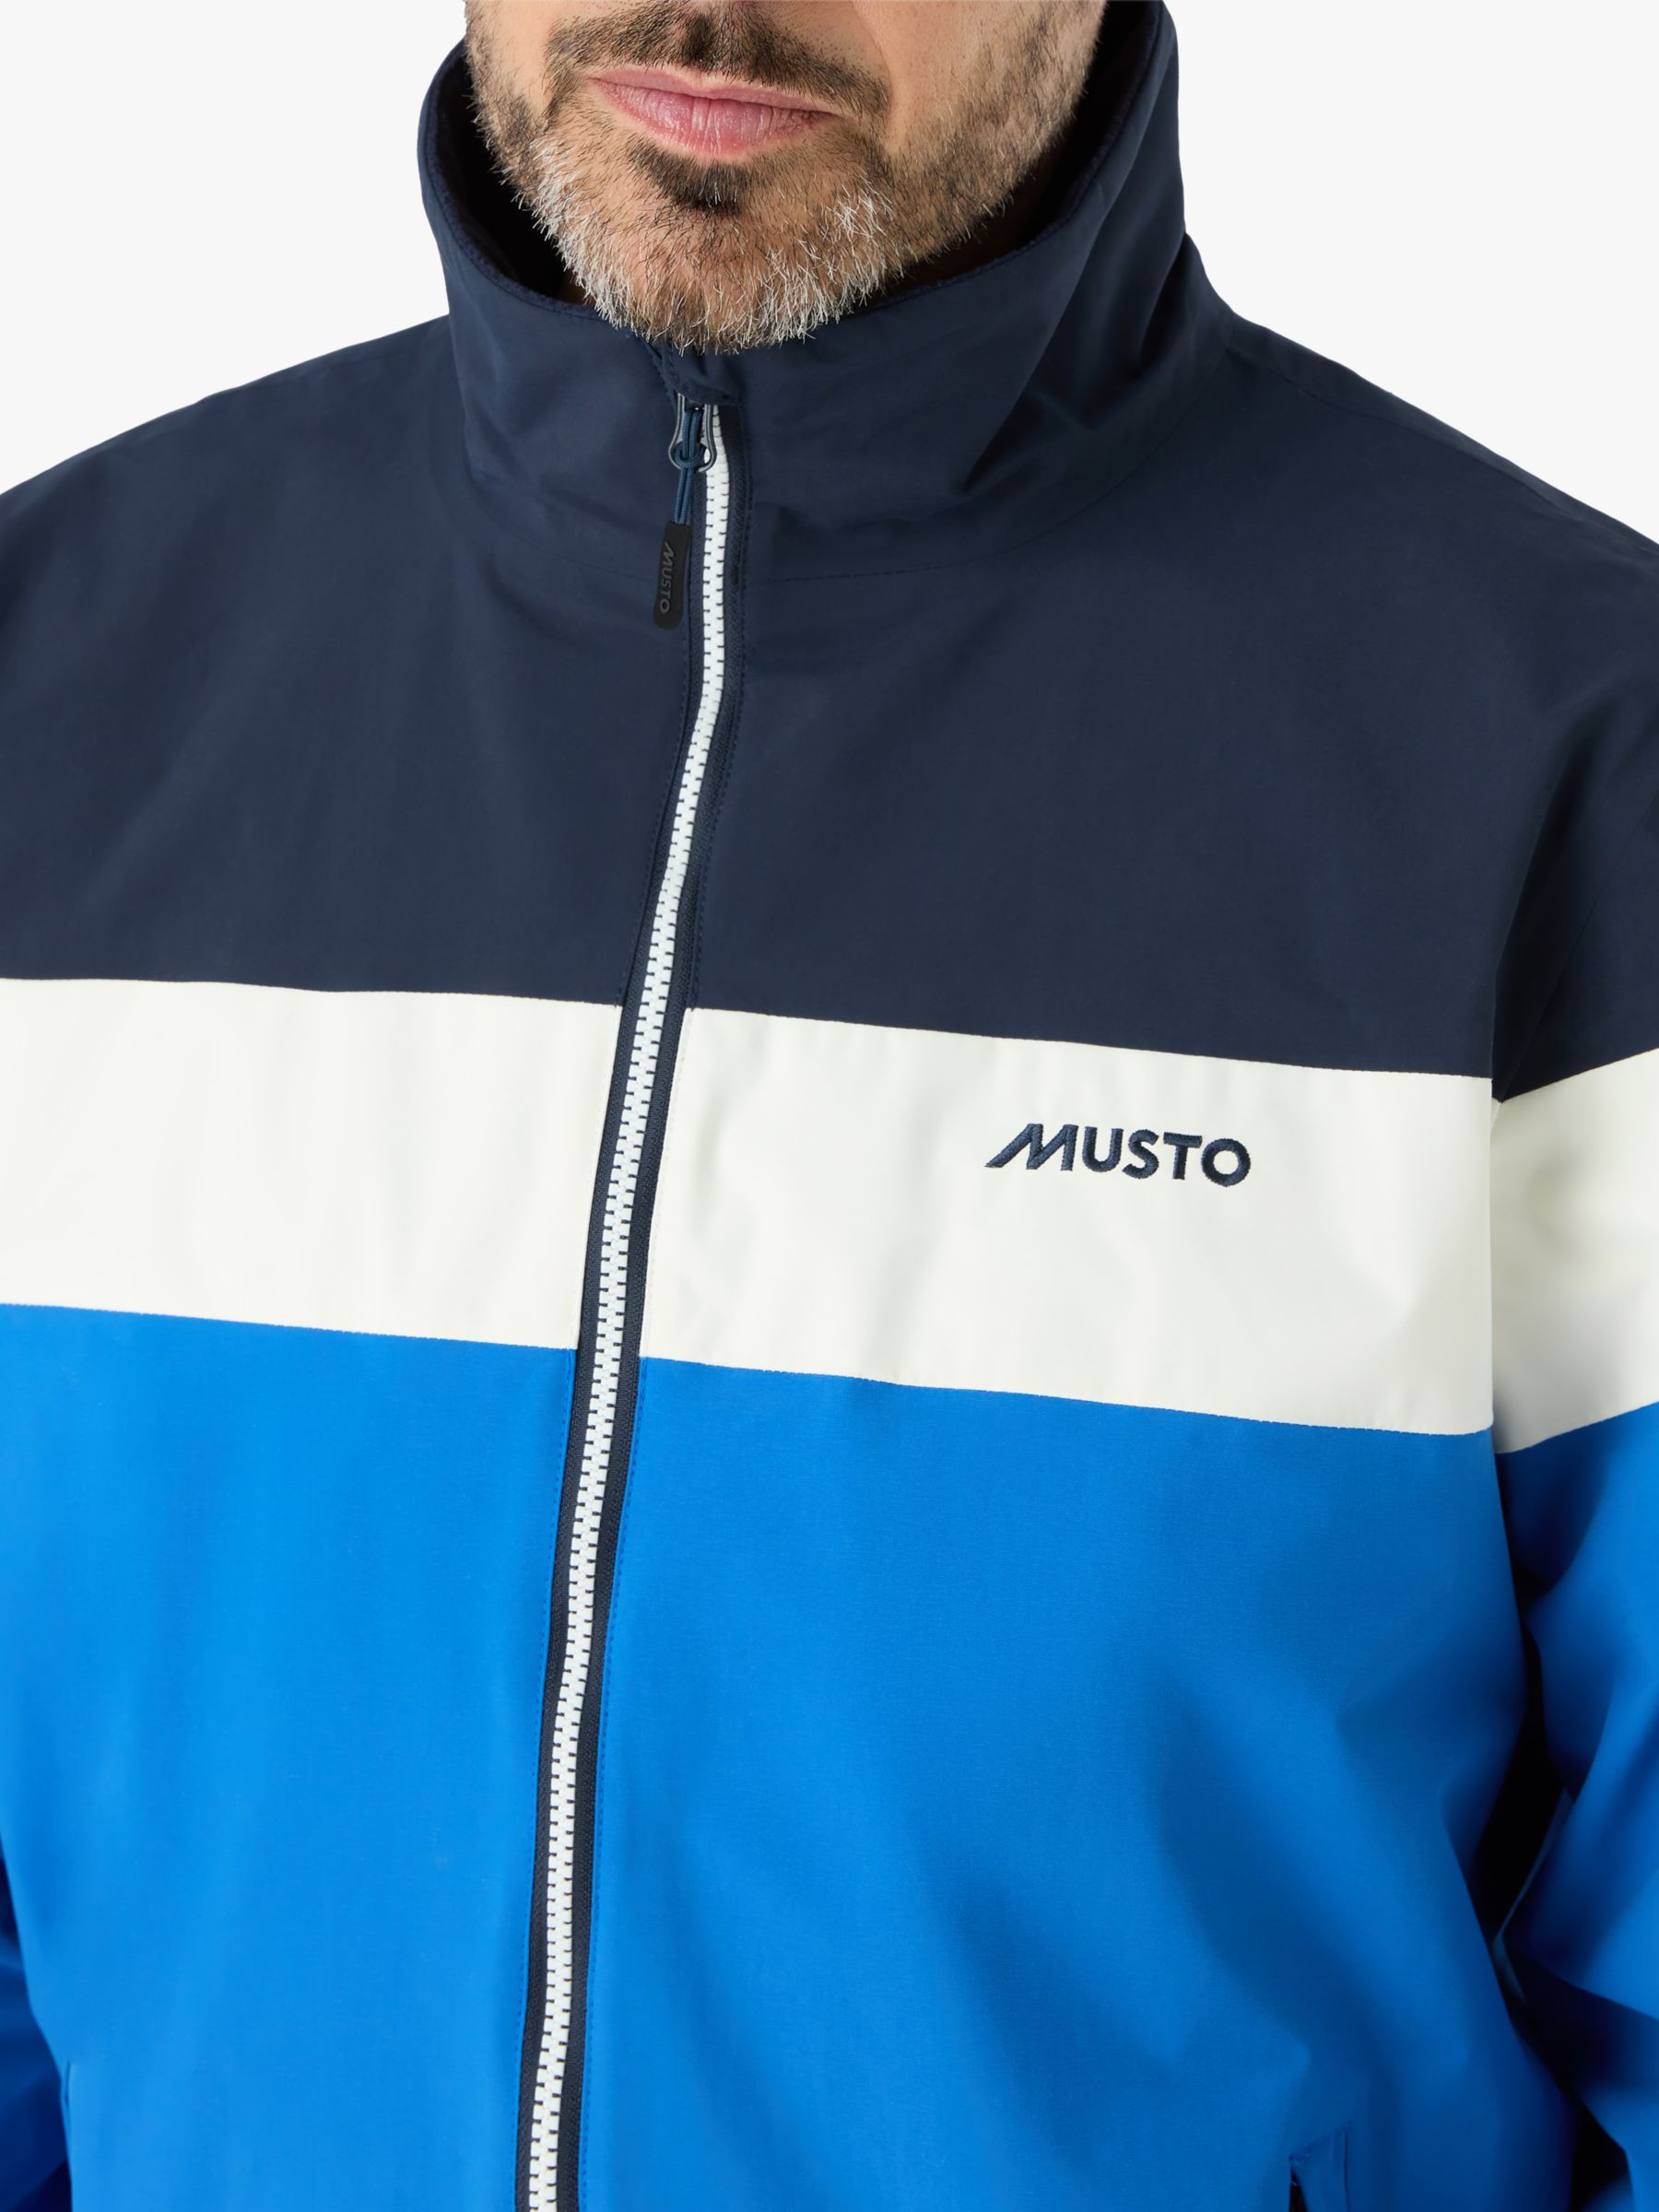 Musto Polartec 64 Colour Block Full Zip Fleece, Aruba Blue/Navy, L